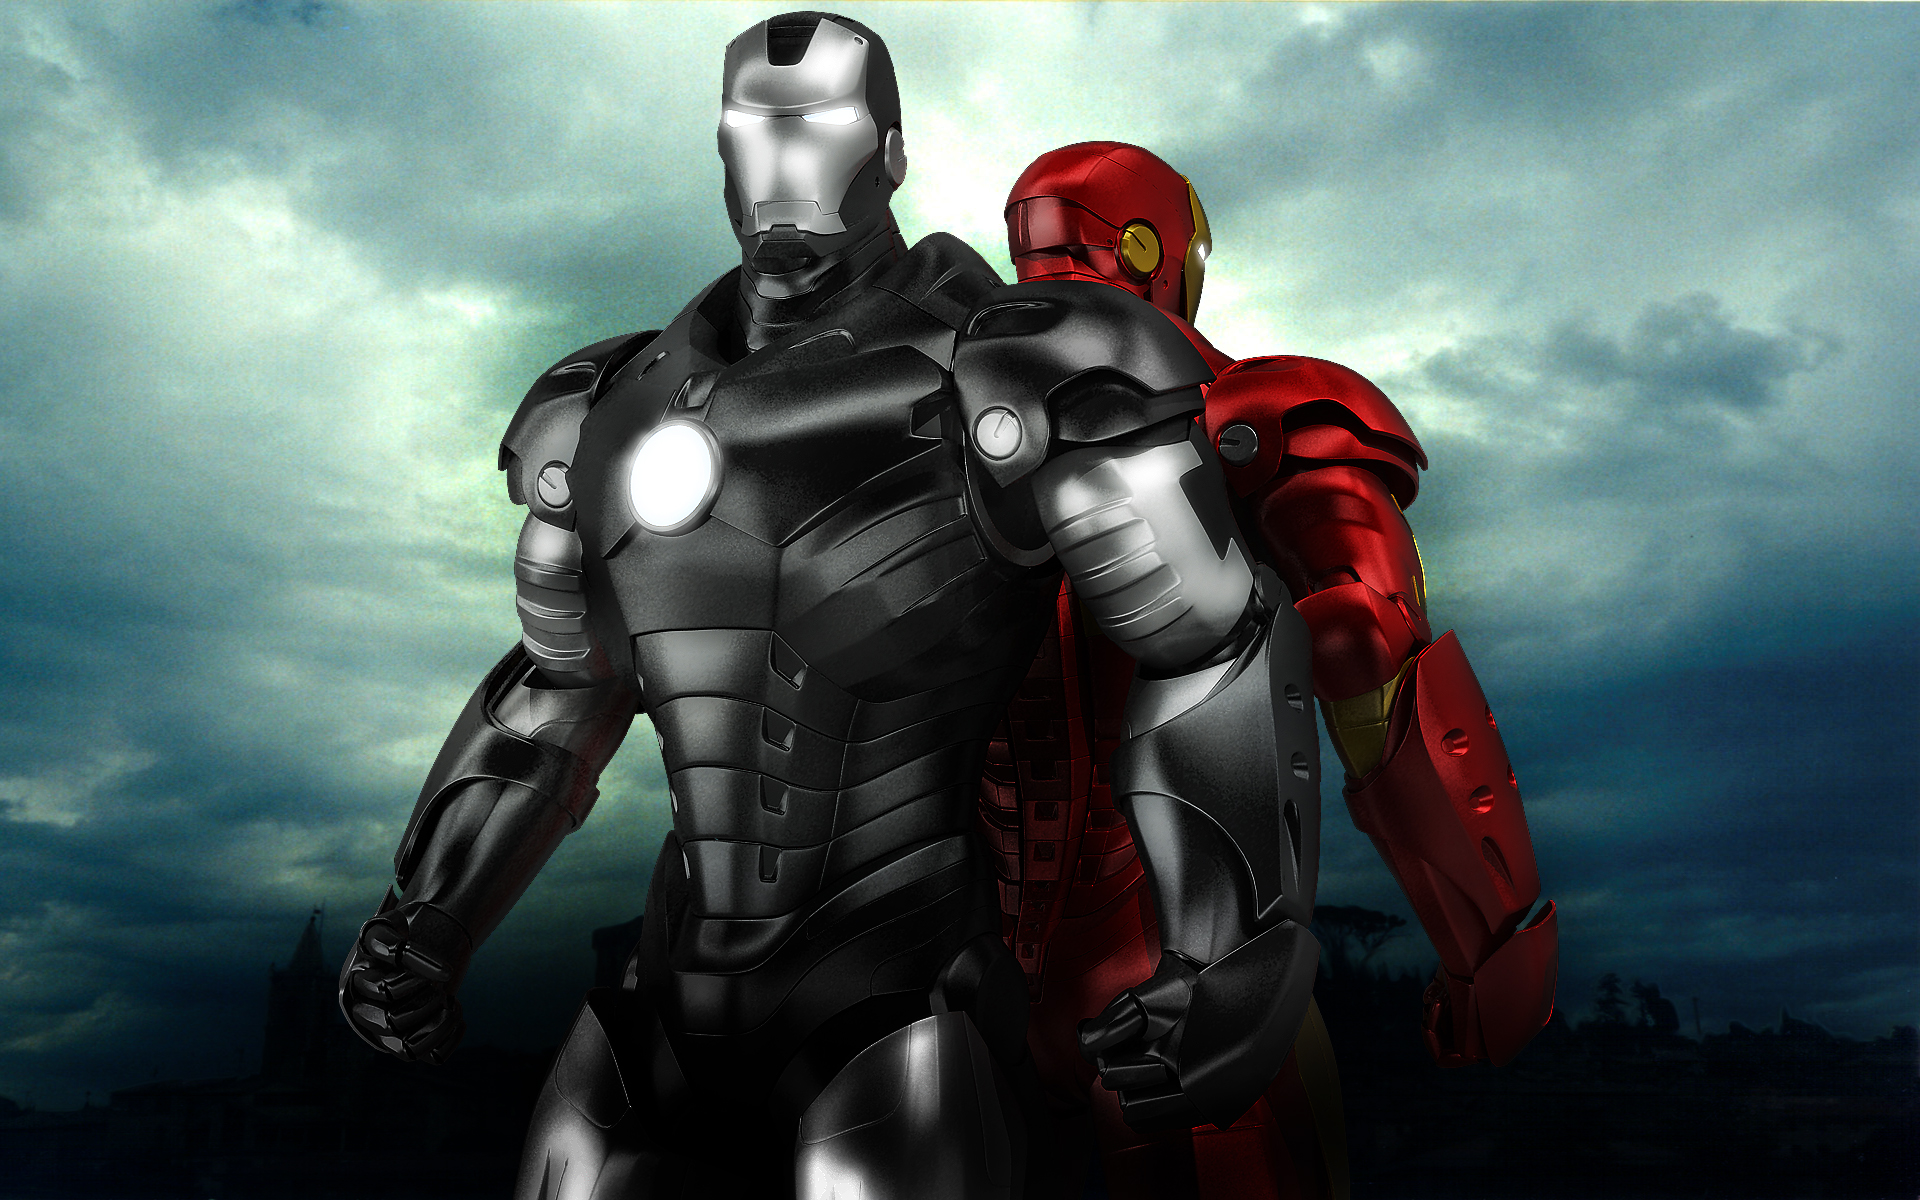 49 Iron Man War Machine Wallpaper On Wallpapersafari - roblox iron man battles war machine